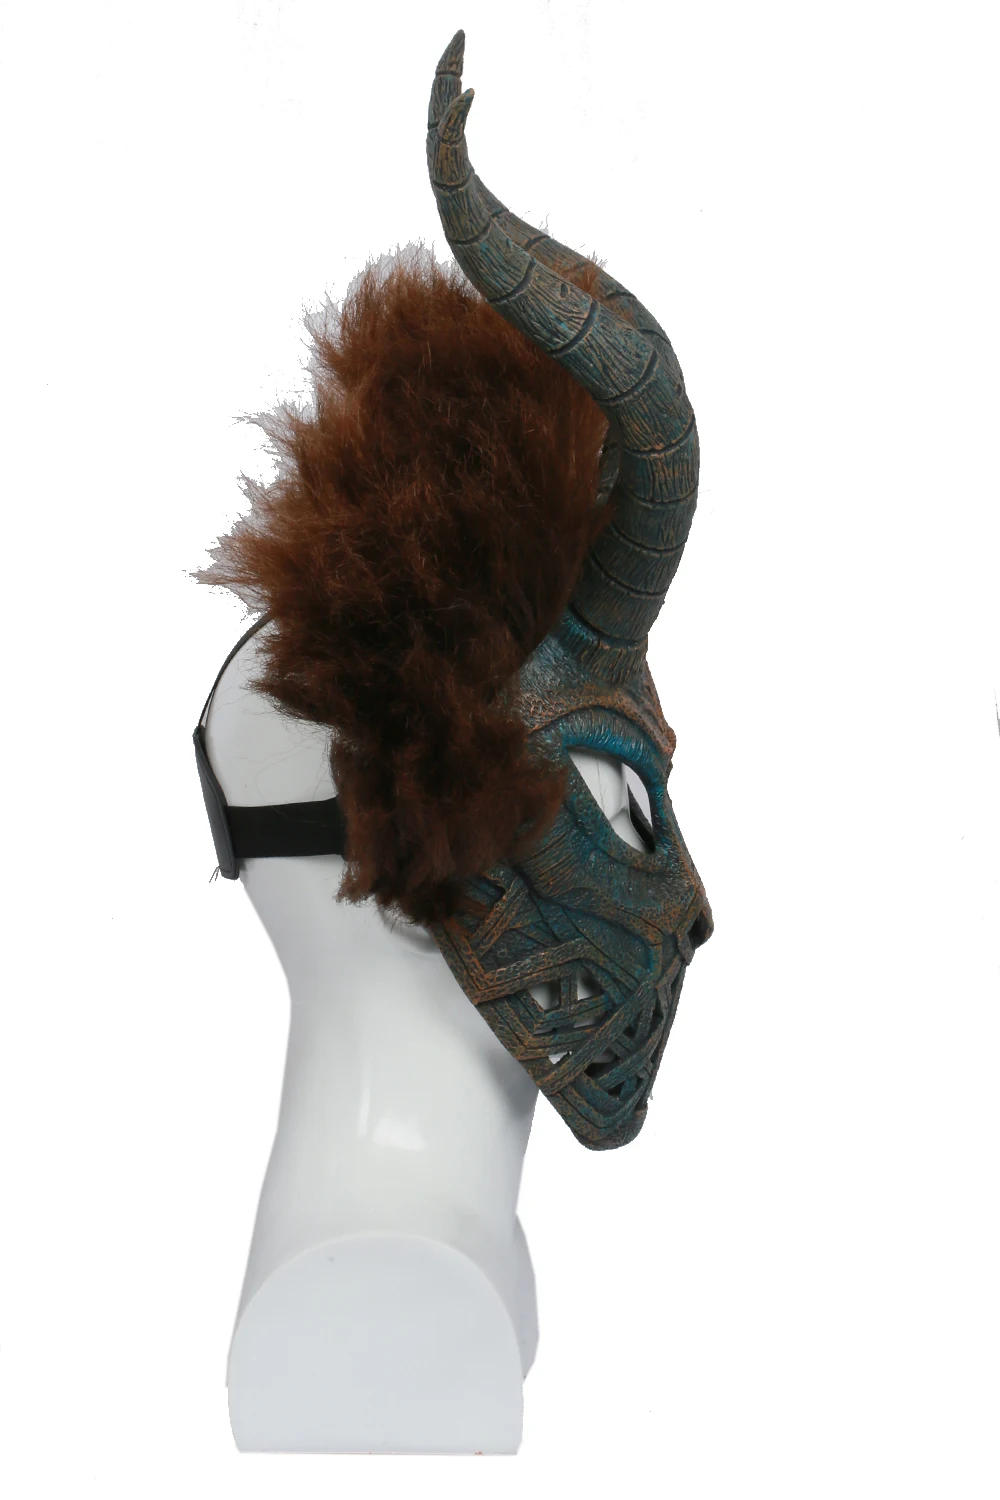 Coslive Erik Killmonger шлем маски для Косплей Черная пантера фильм косплей коричневая маска с париком костюм бутафорские аксессуары